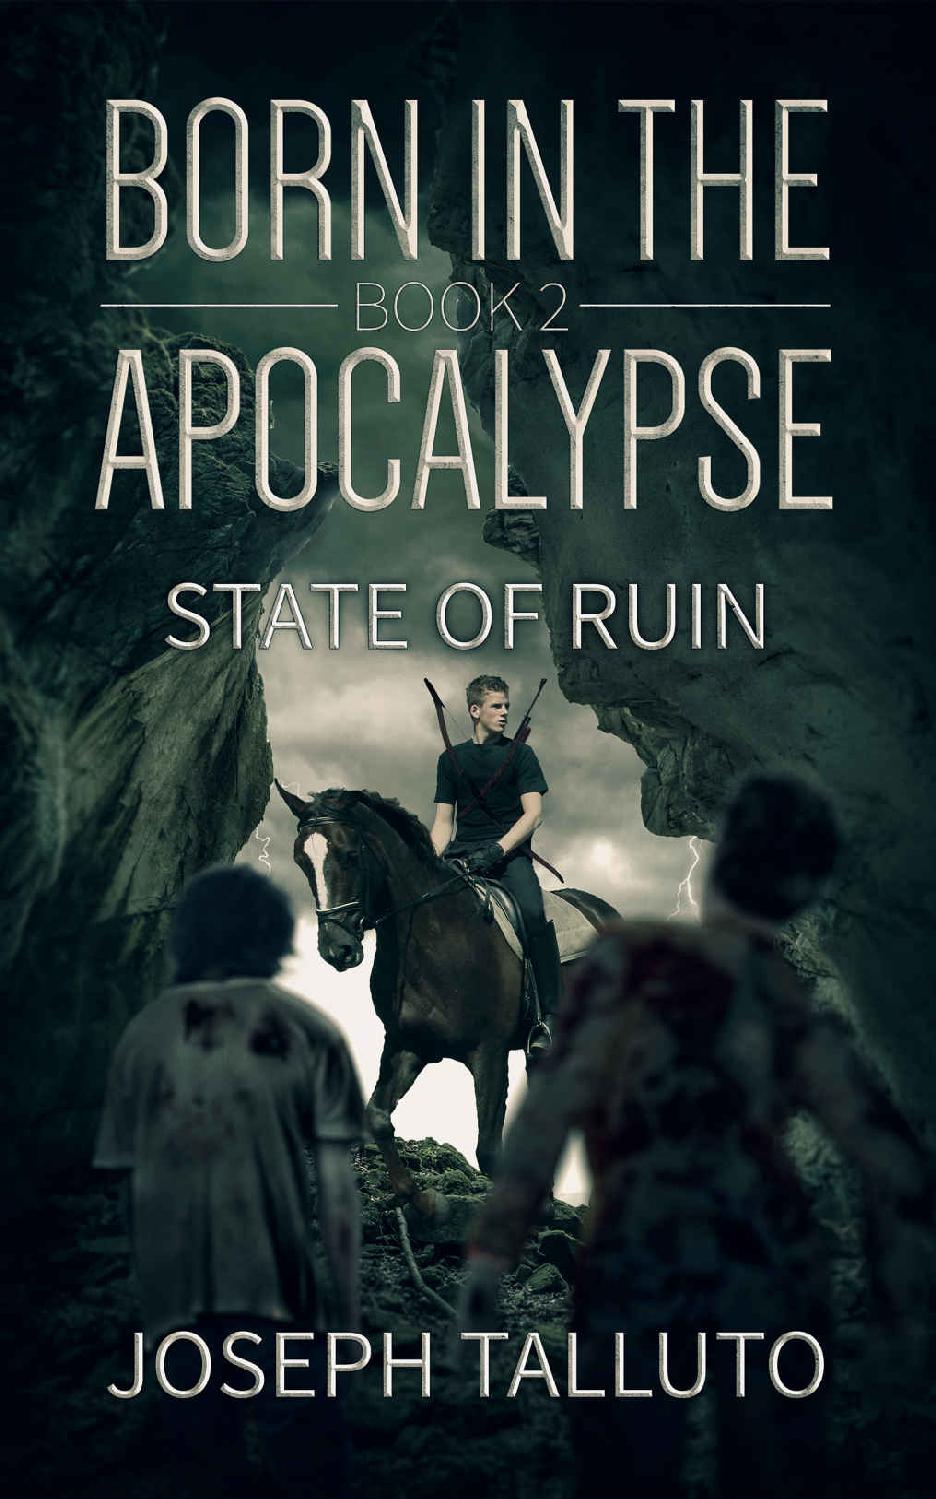 Born in the Apocalypse 2: State Of Ruin by Joseph Talluto